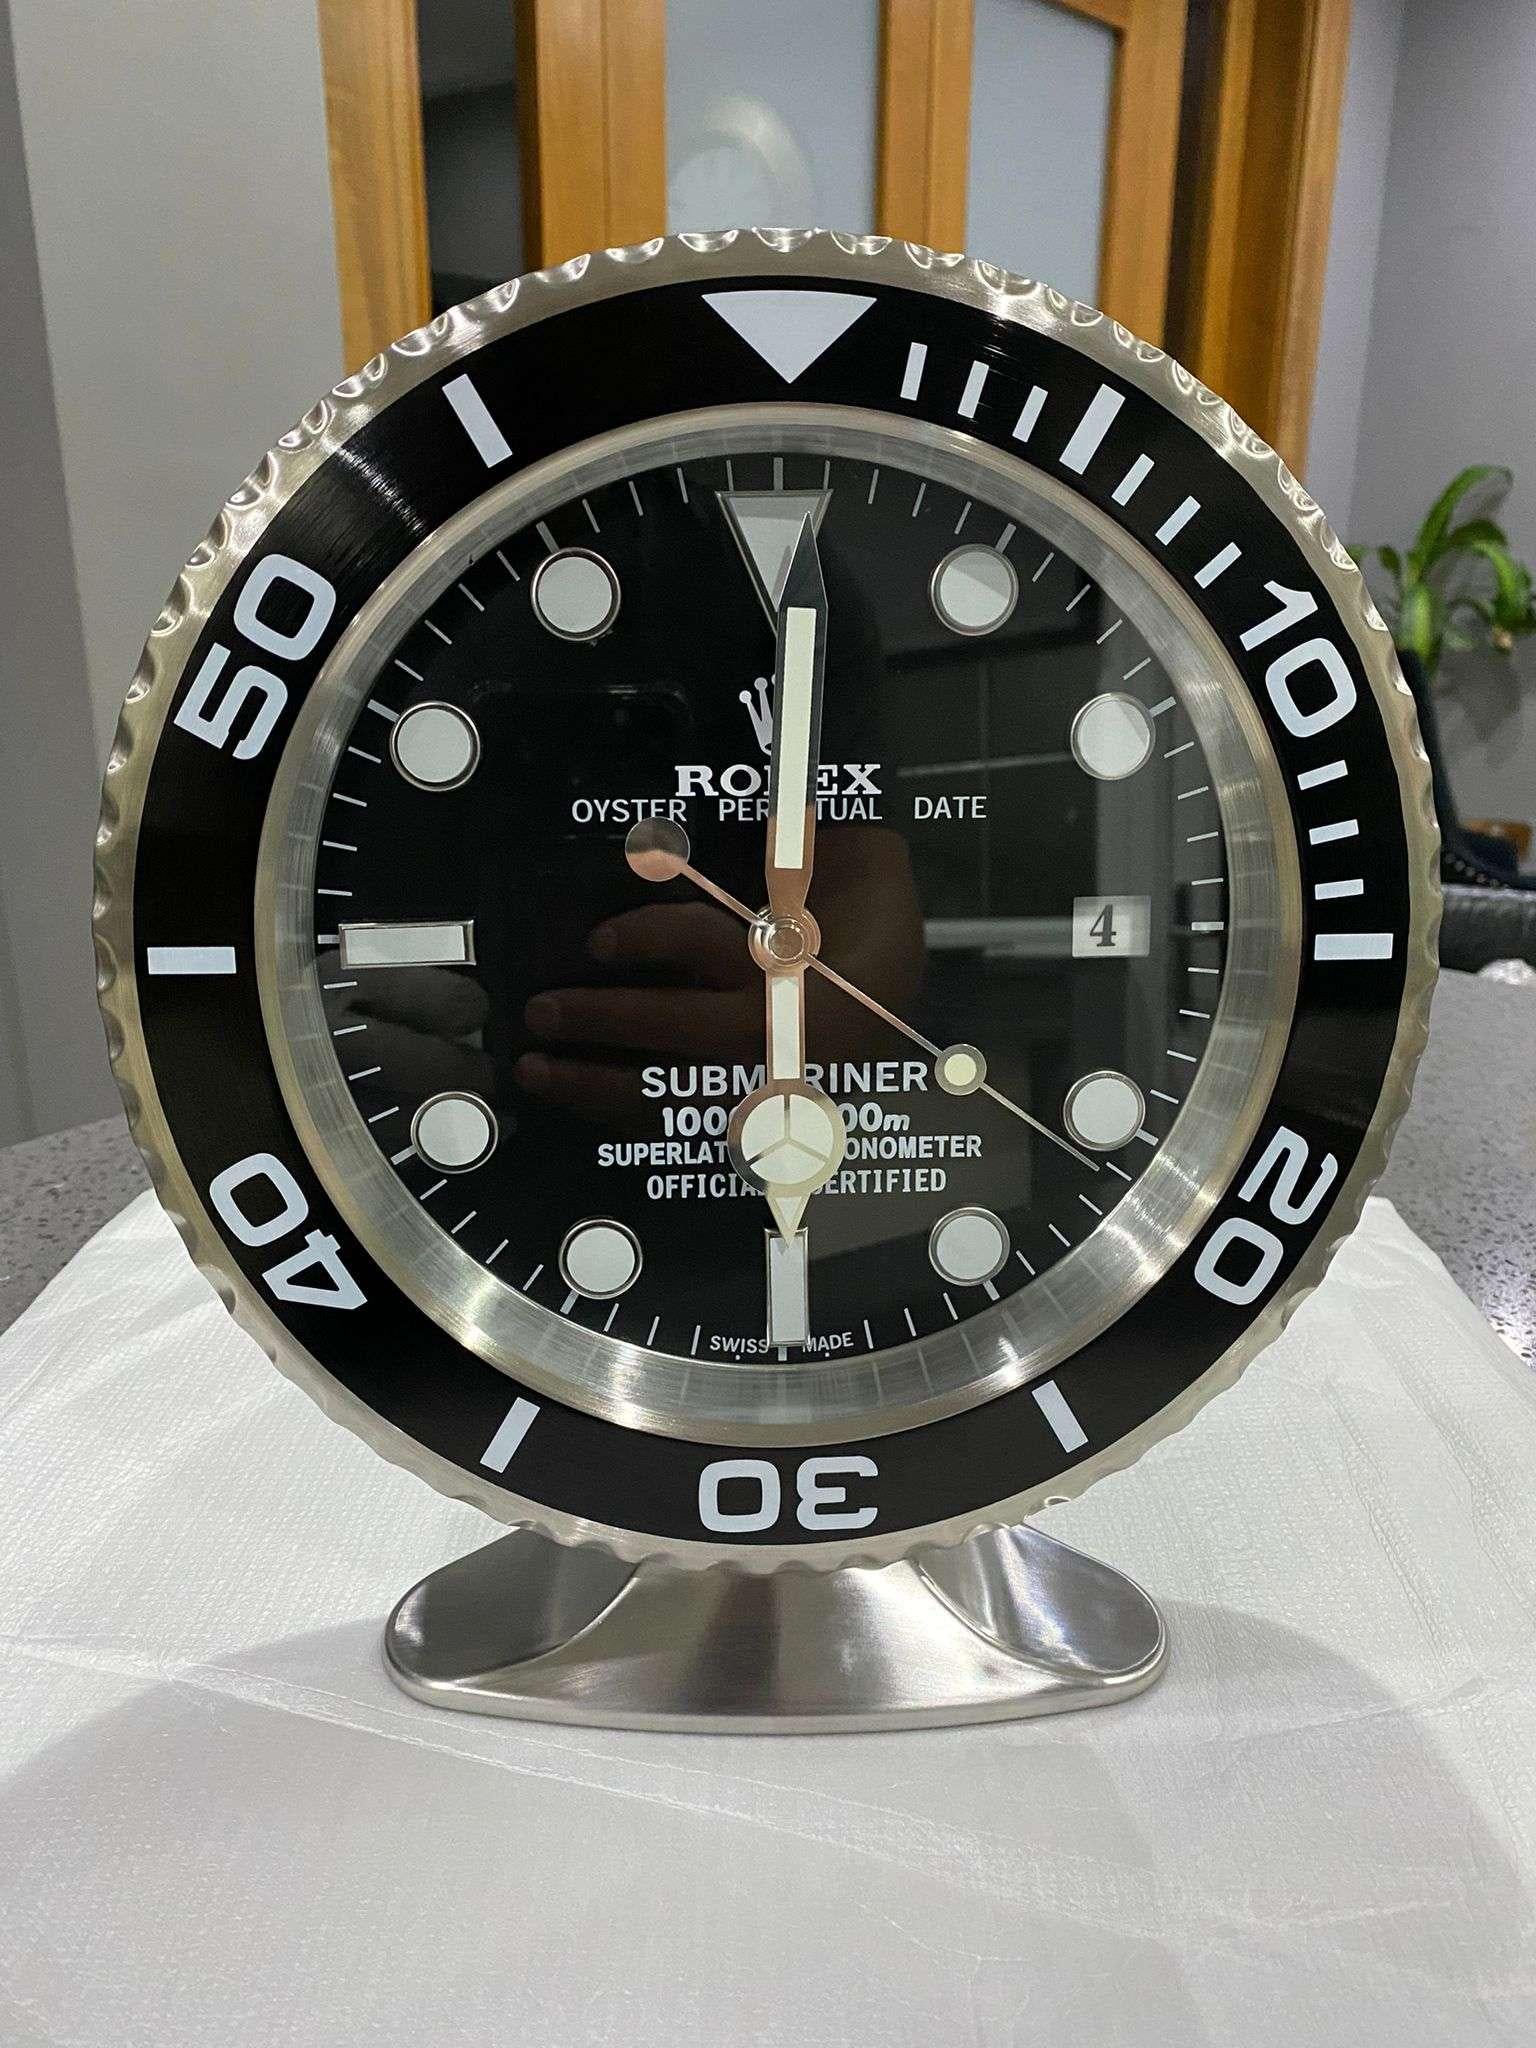 Horloge de bureau ROLEX Oyster Perpetual Black Submariner certifiée officiellement 

Mains lumineuses.
Date entièrement fonctionnelle.
Balayage des mains.
Mouvement à quartz.
Bon état, fonctionnement.
Expédition internationale gratuite.

Ces